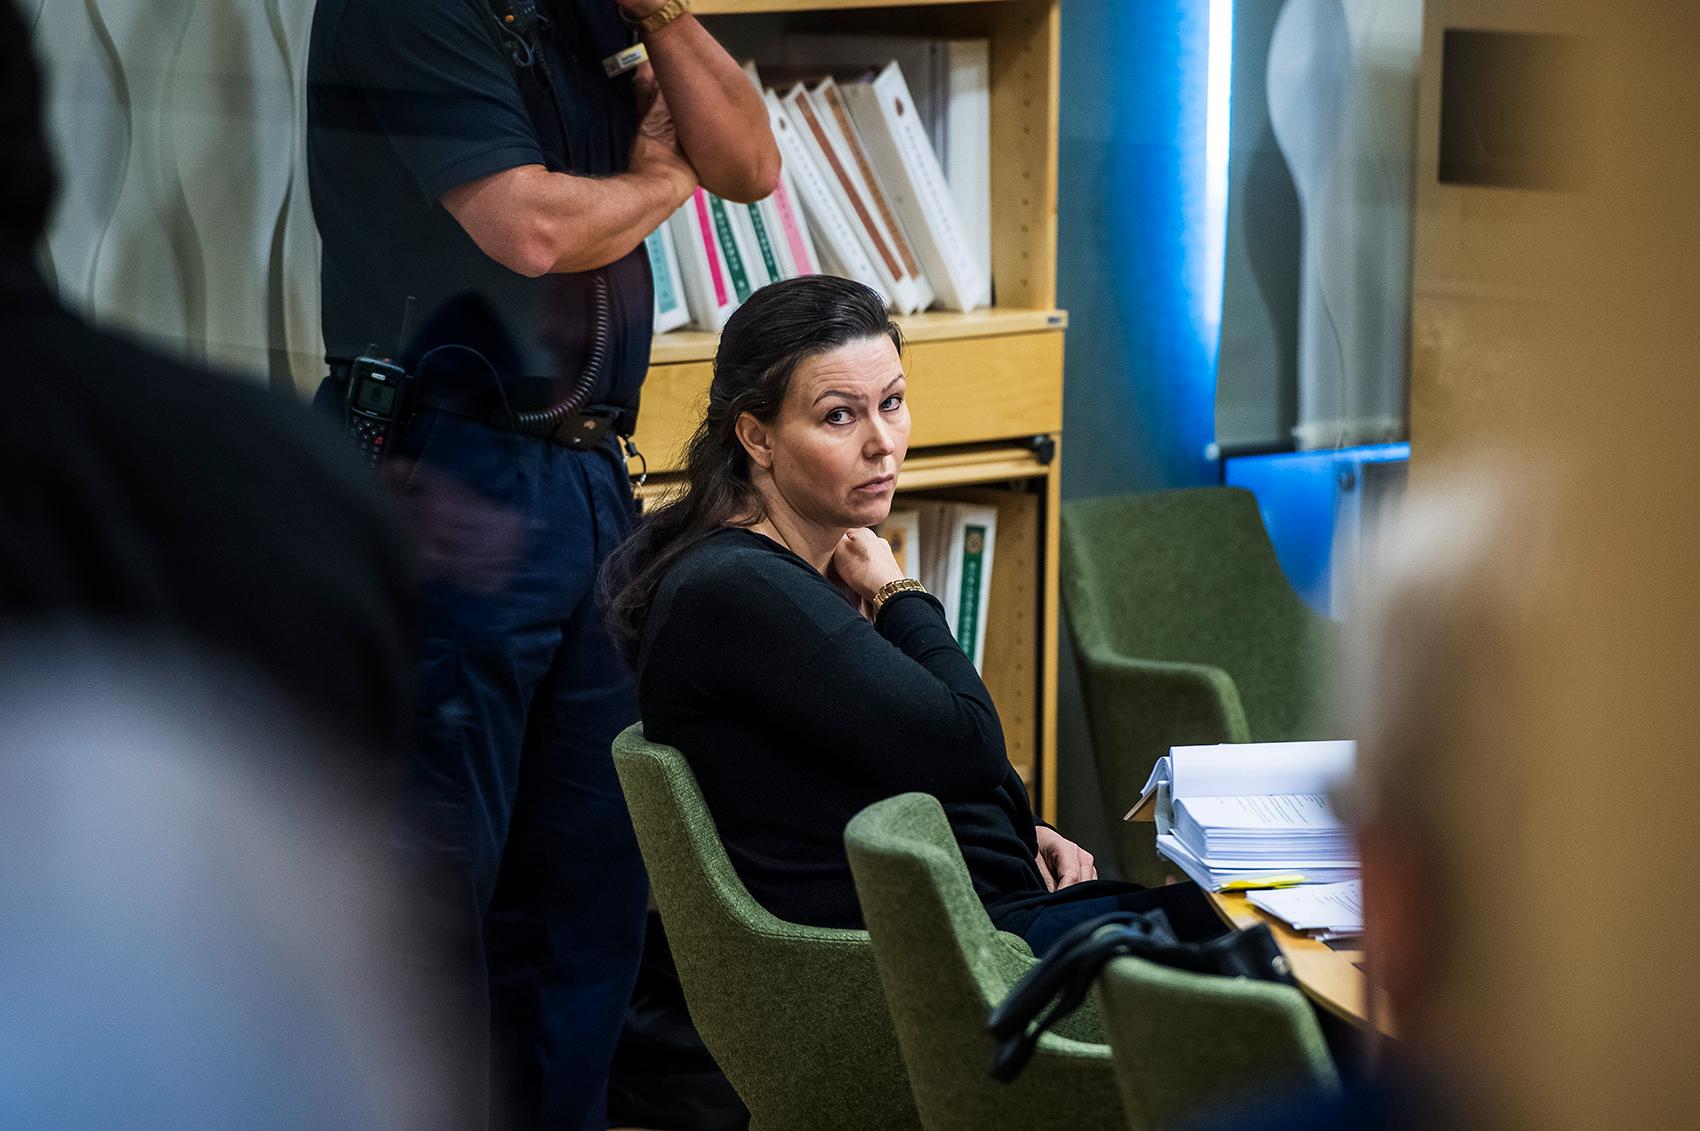 Arbogakvinnan Johanna Möller är enligt tingsrätten skyldig till mord på sin tidigare make och sin pappa.